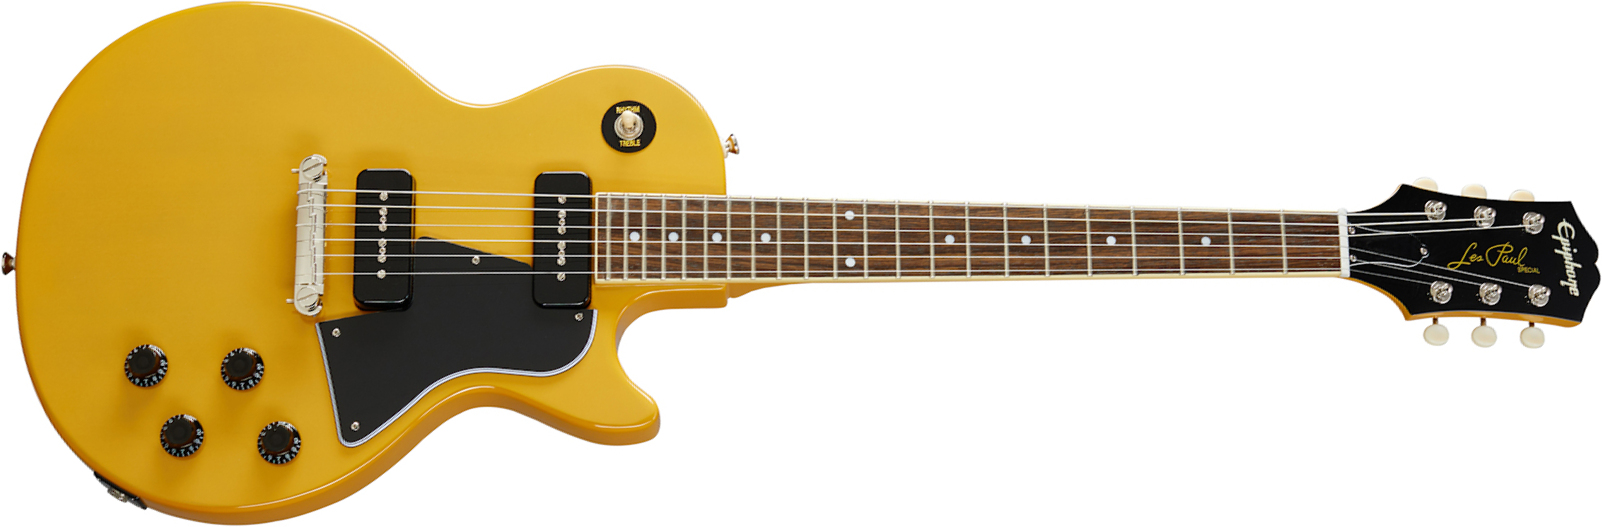 Epiphone Les Paul Special 2p90 Ht Lau - Tv Yellow - Enkel gesneden elektrische gitaar - Main picture